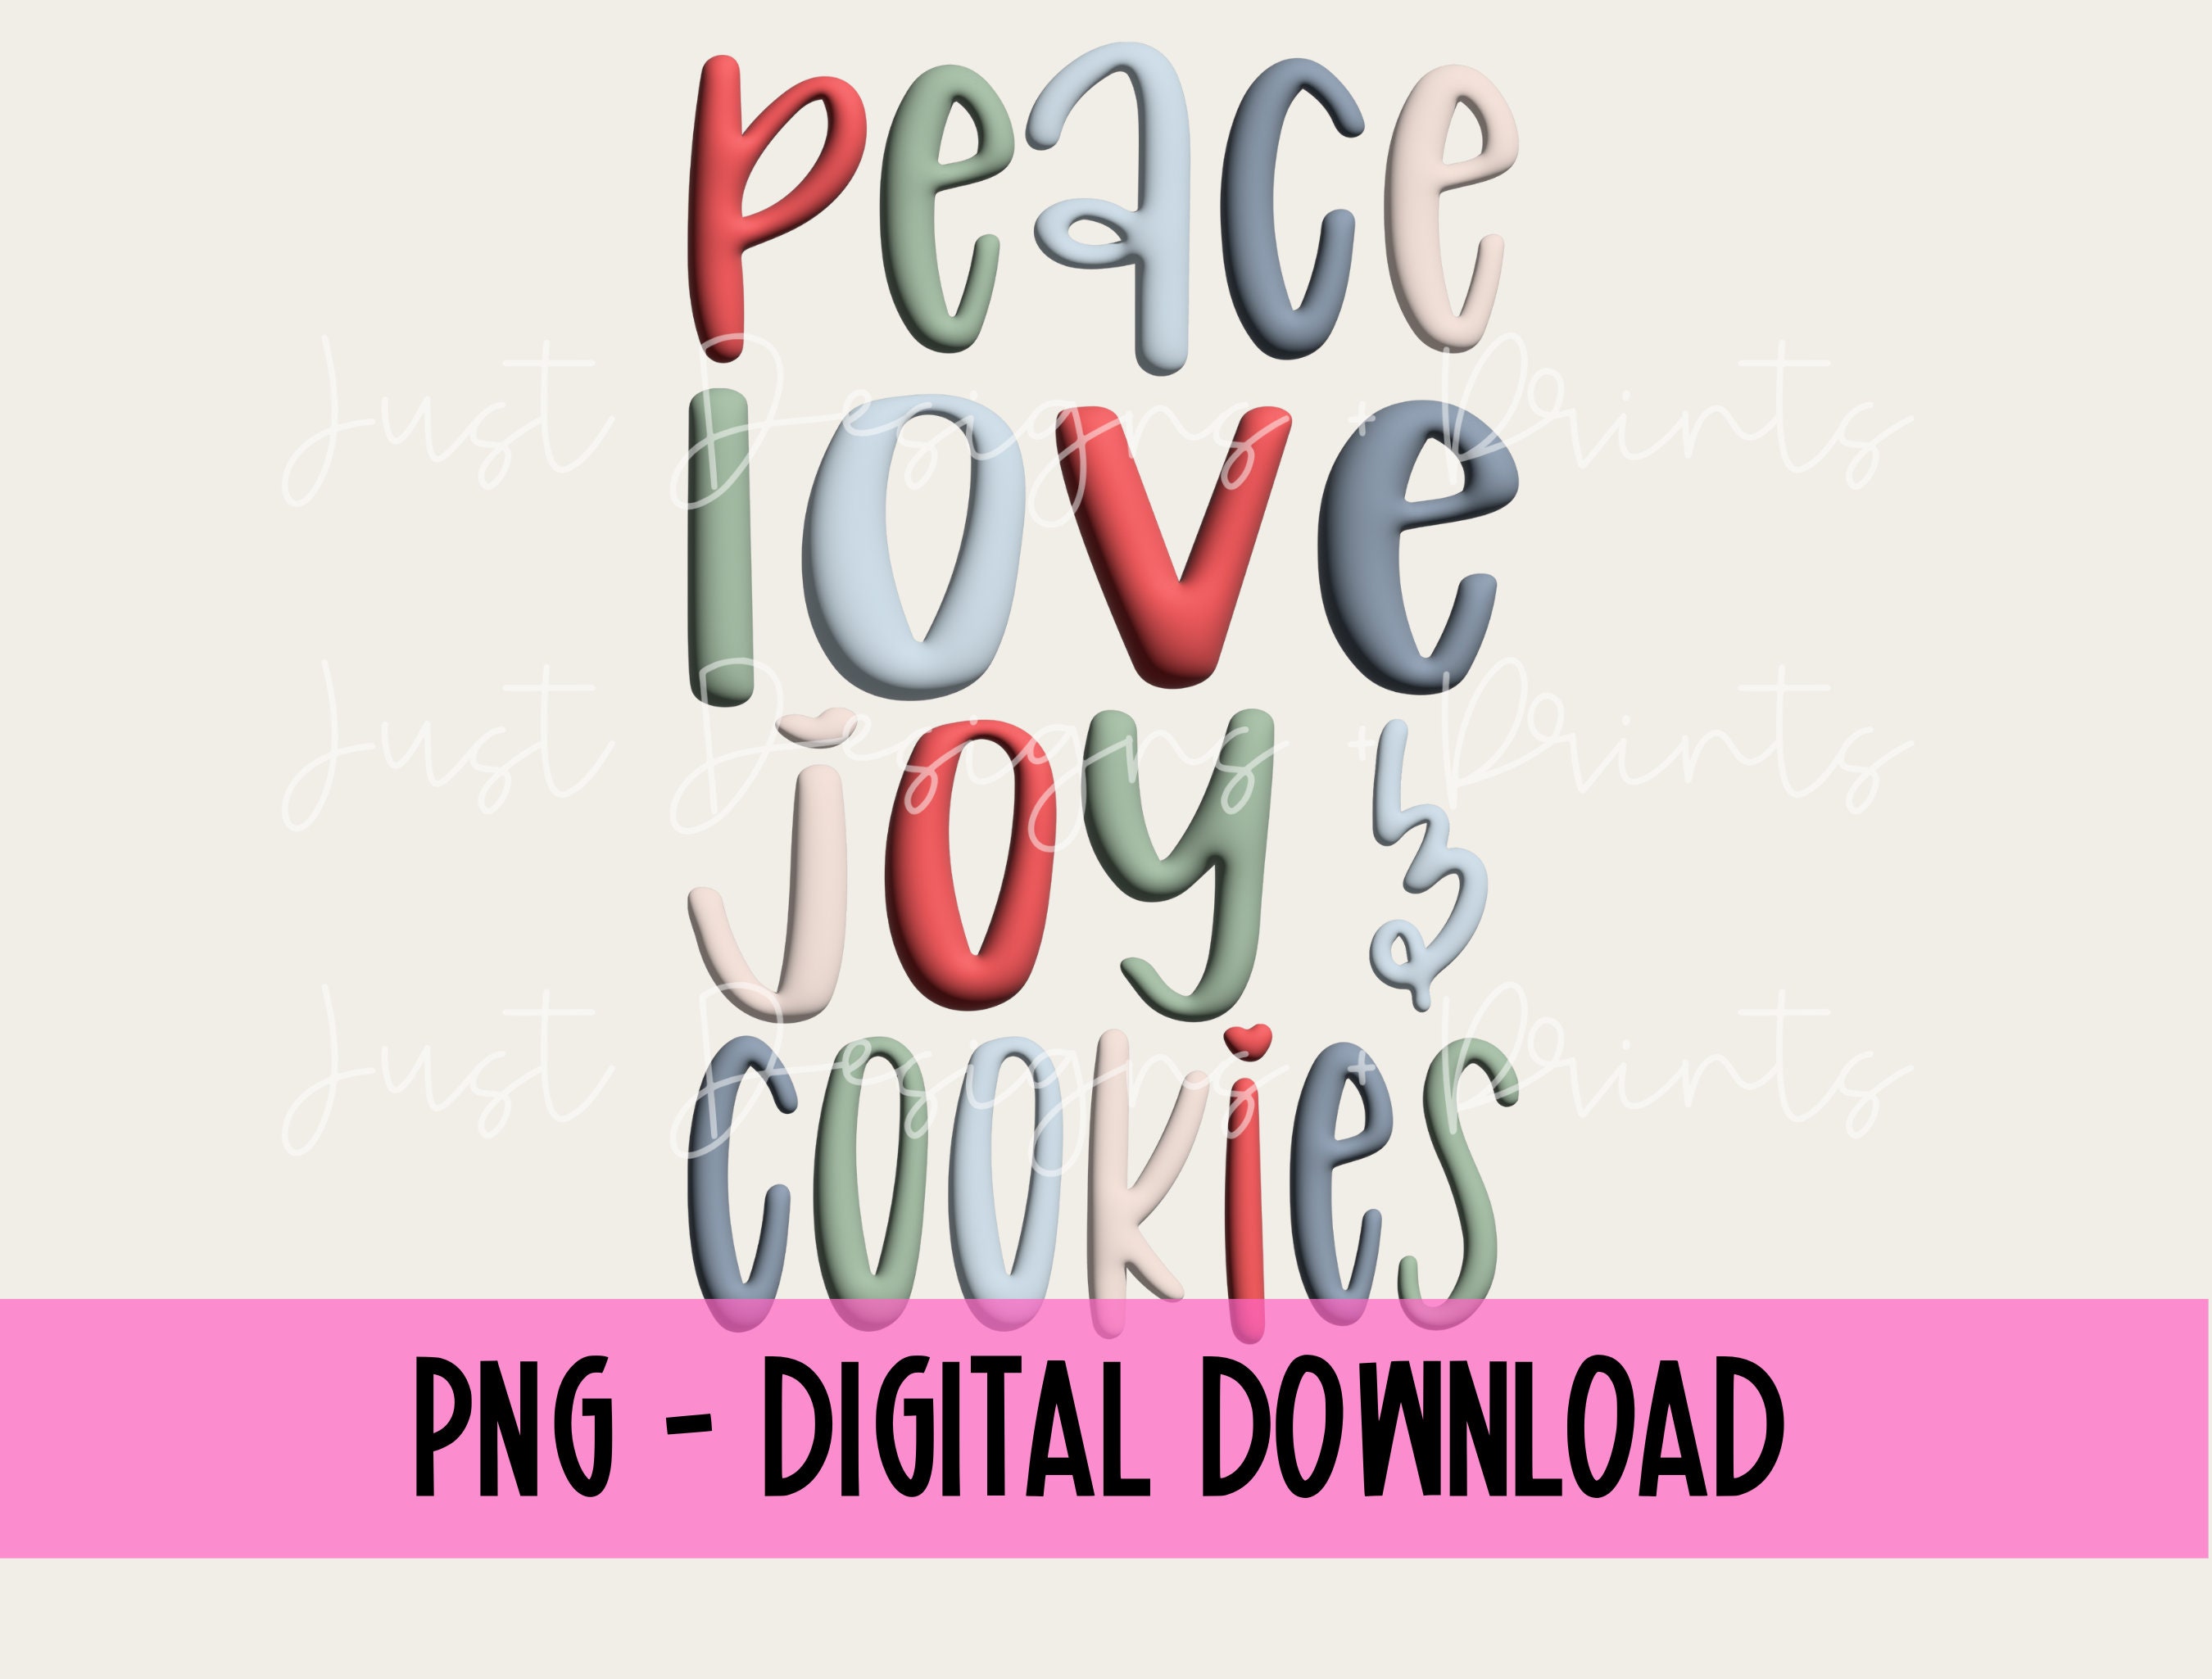 Peace Love Joy 4 in 1 Tumbler